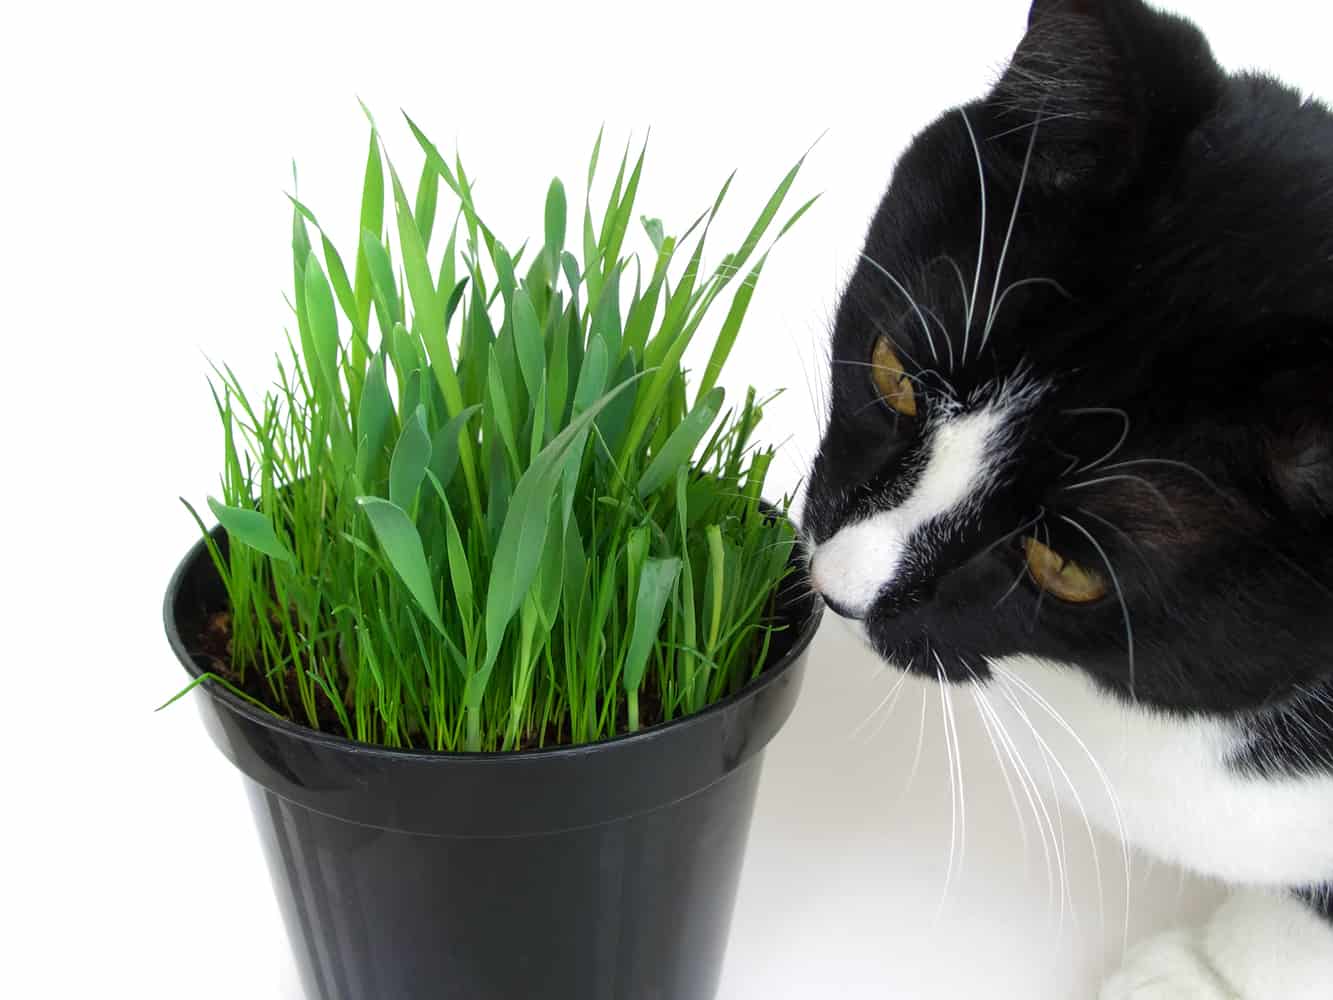 Трава для кошек. зачем трава кошкам? выращивание травы для кошек | животный мир